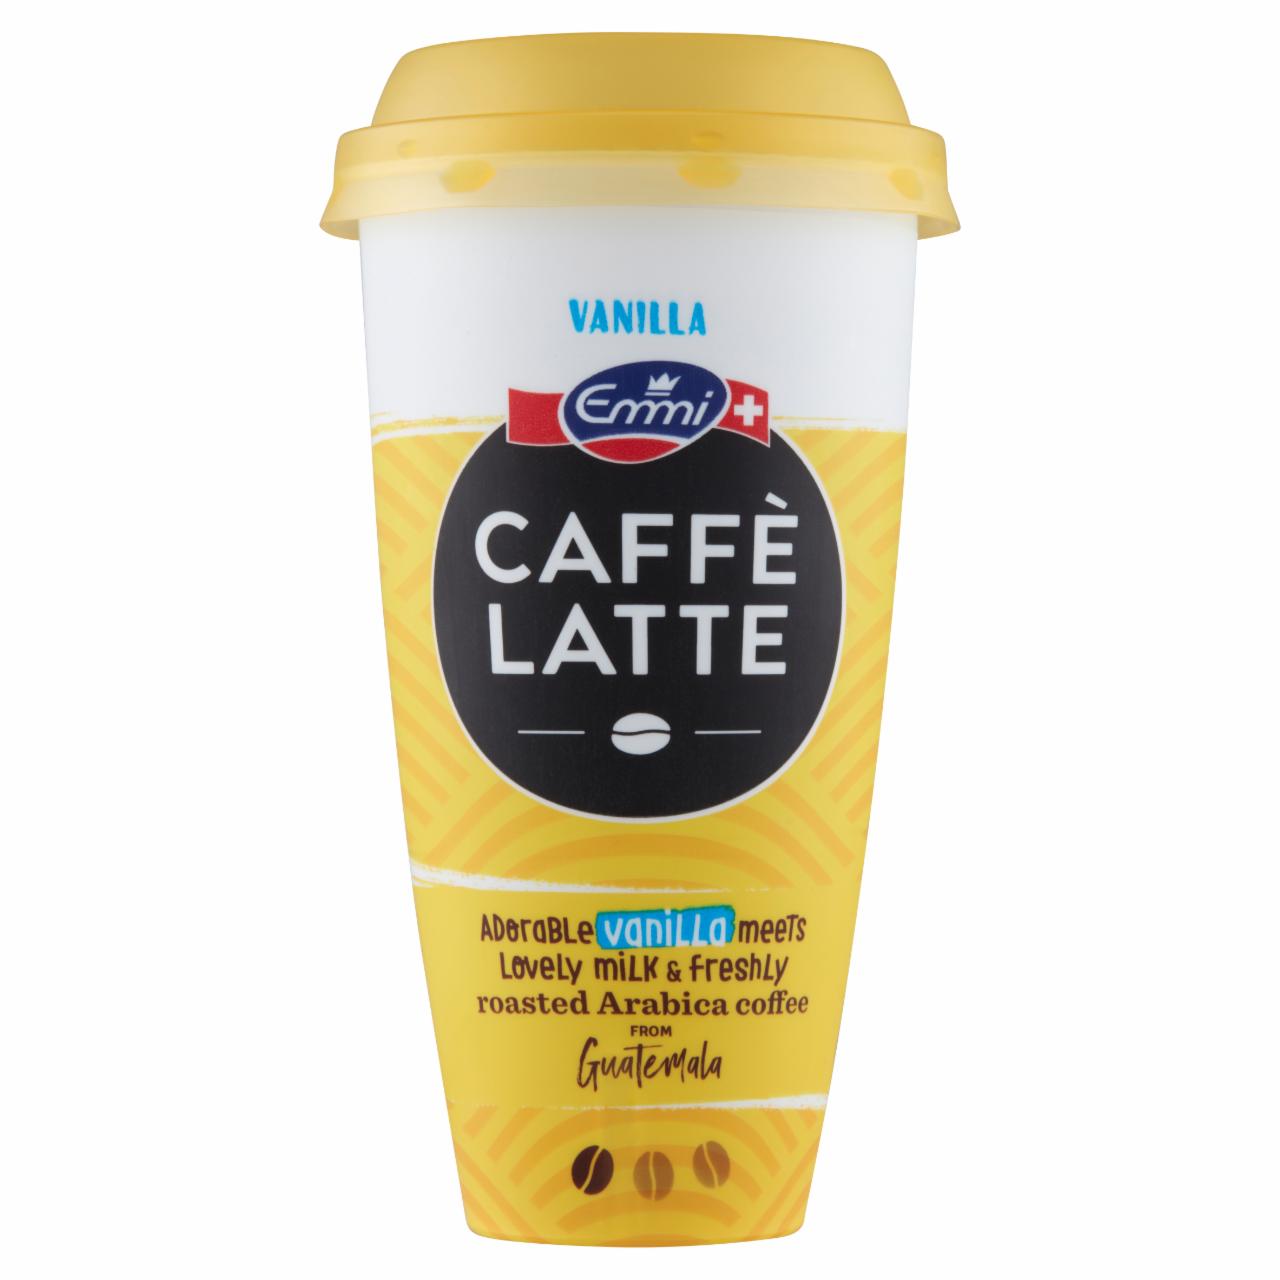 Képek - Emmi Caffé Latte Vanilla jegeskávé arab kávéval és vaníliával 230 ml